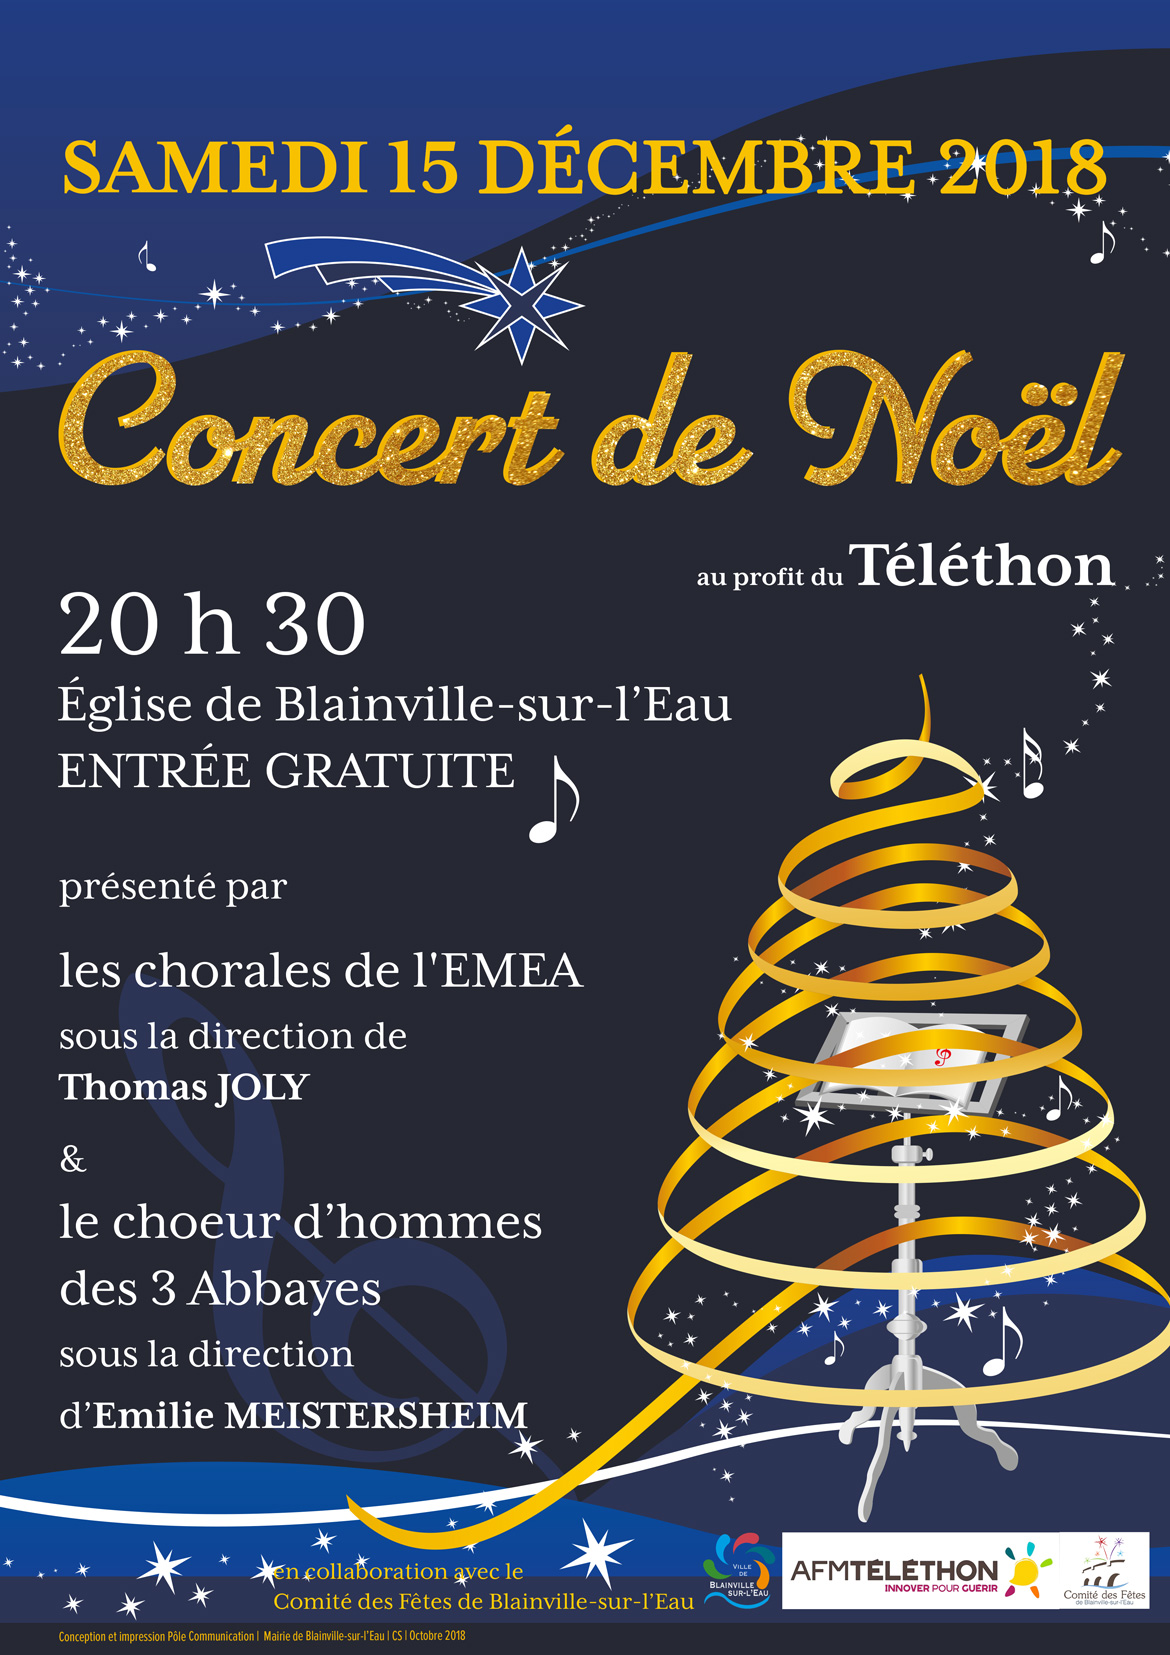 concert de Noël de l'EMEA - samedi 15 decembre 2018